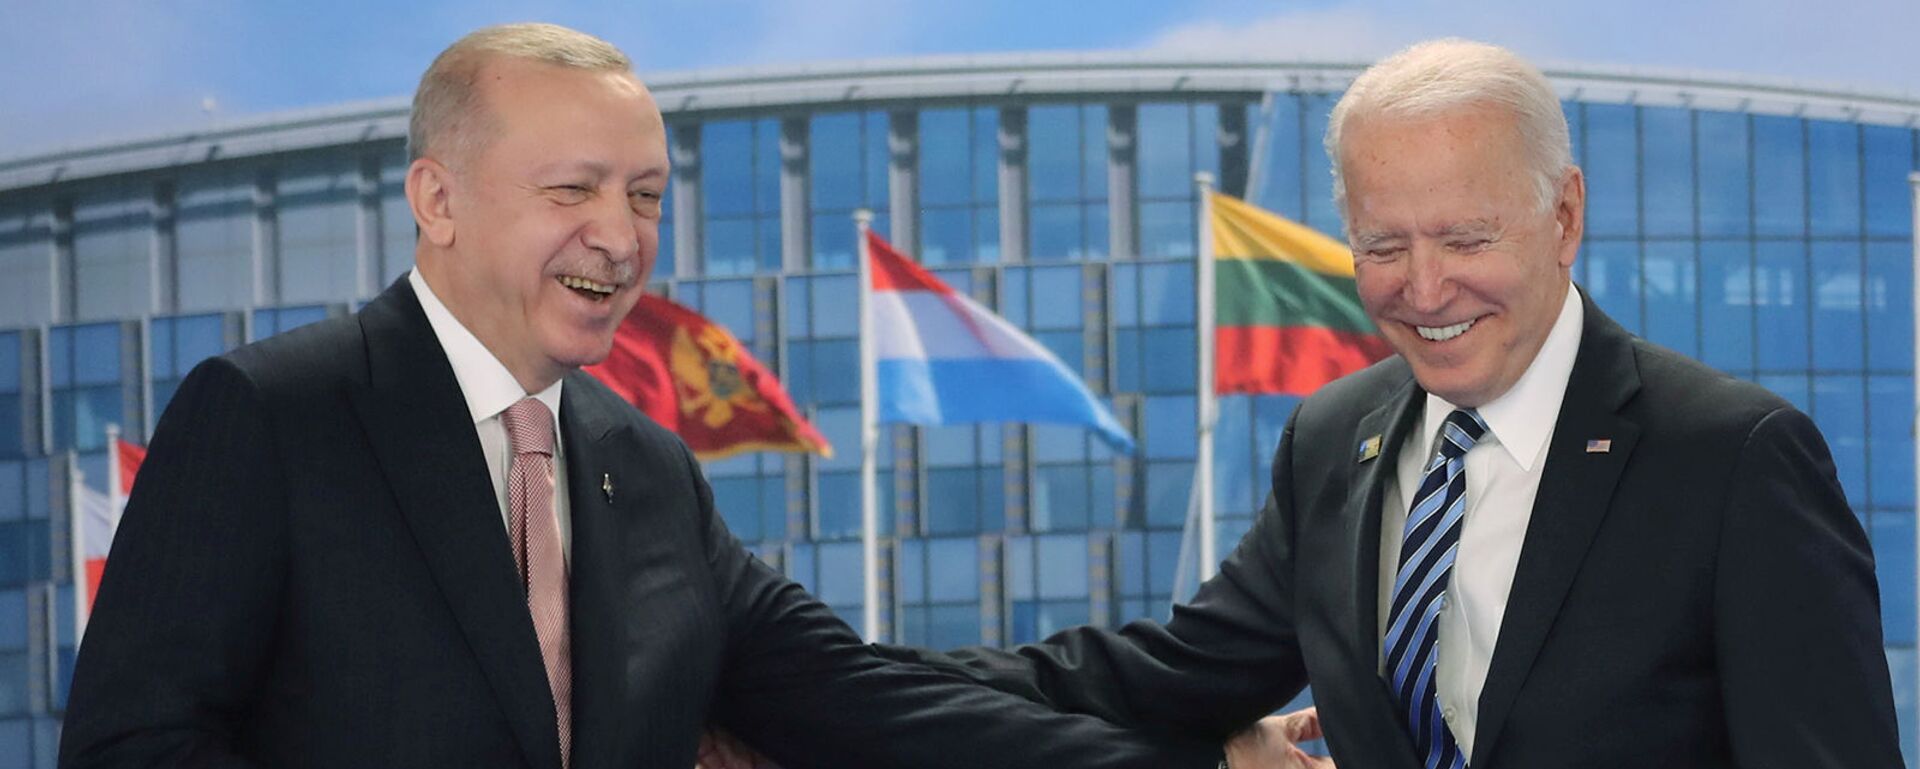 Президенты США и Турции Джо Байден и Реджеп Тайип Эрдоган на фоне флагов членов НАТО (14 июня 2021). Бельгия - Sputnik Армения, 1920, 13.10.2021